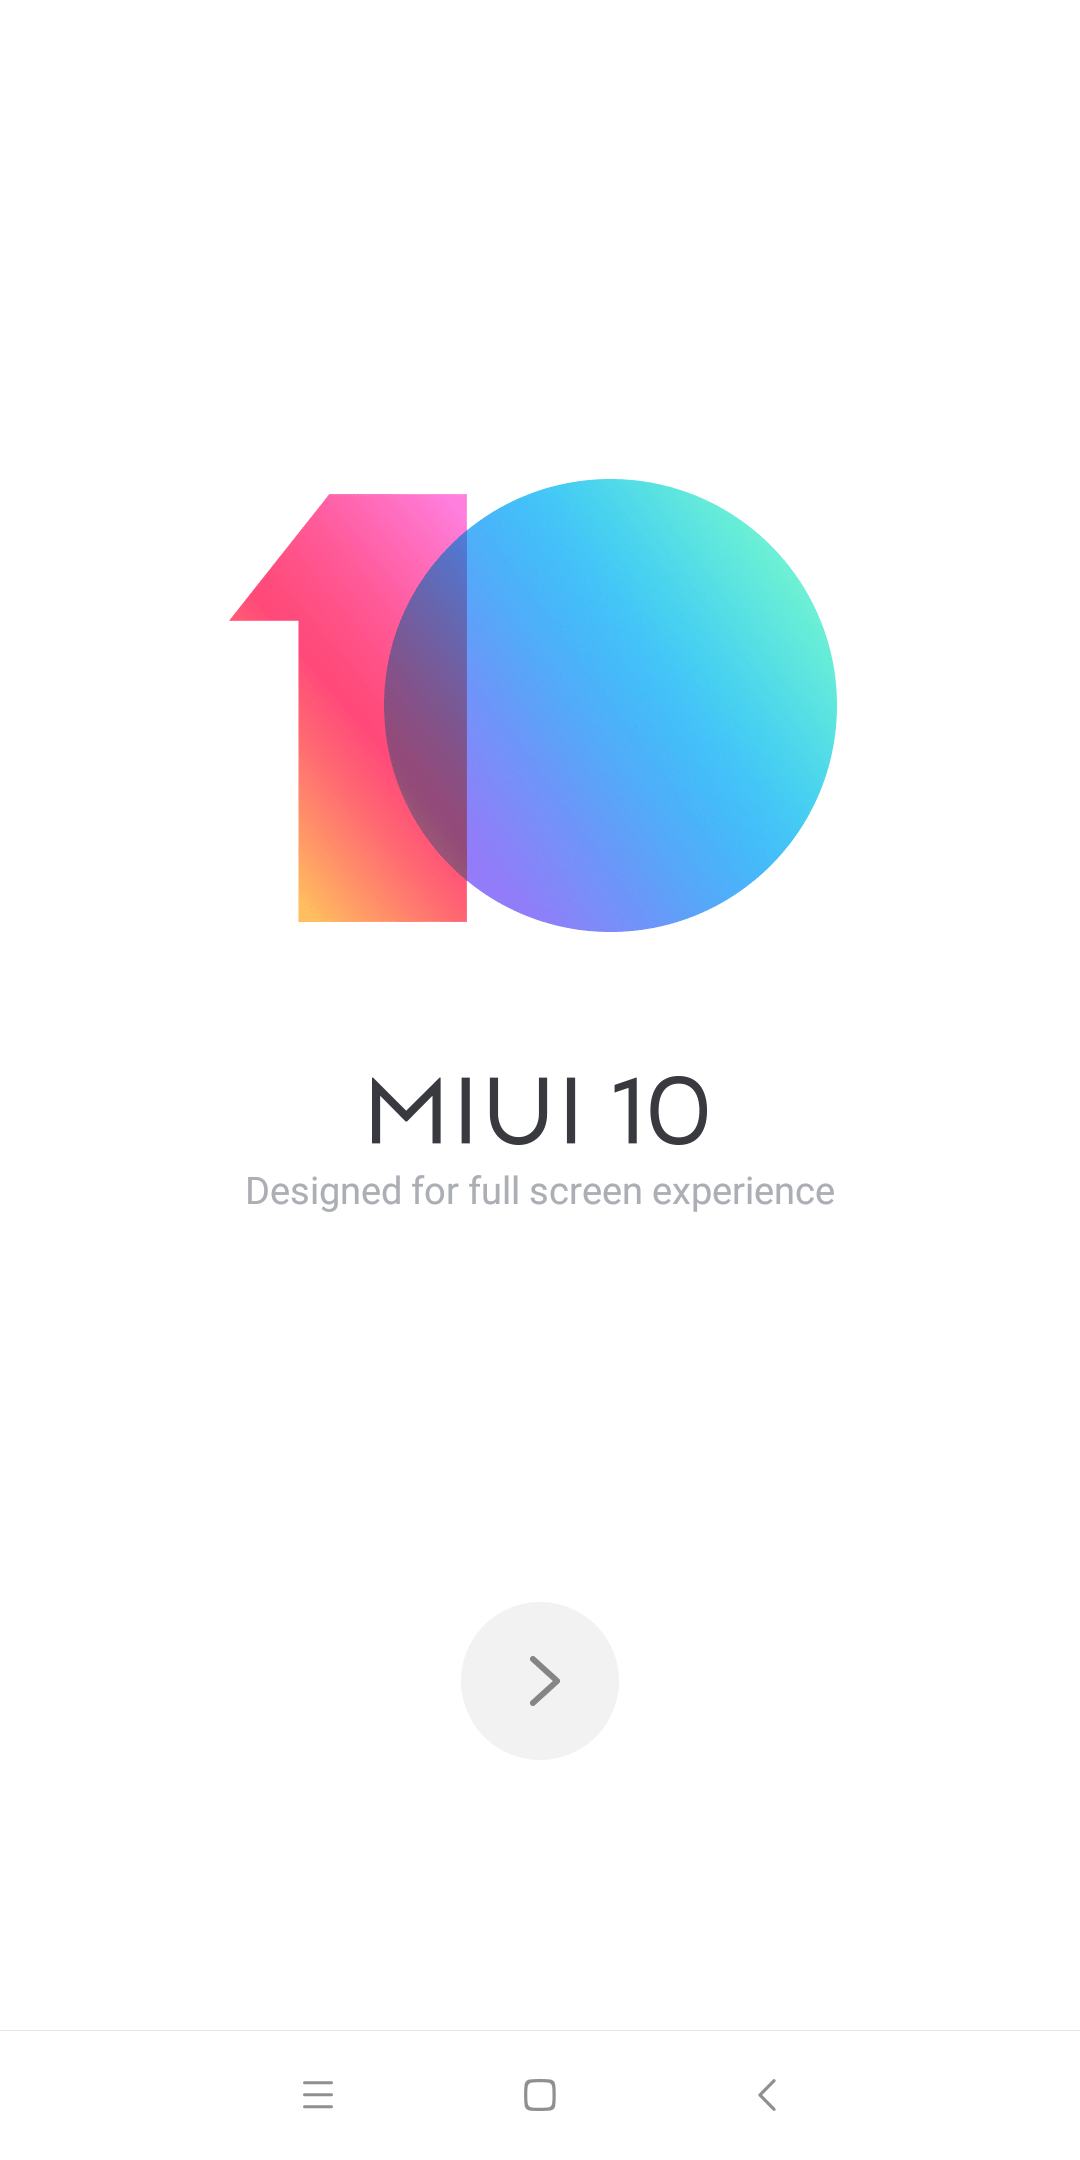 Rom Miui 10: Một màn hình đầy màu sắc và hoạt động trơn tru chờ đón bạn khi bạn tải về phiên bản Rom MIUI 10 mới nhất. Không chỉ cải thiện hiệu năng và tính năng cho điện thoại của bạn, MIUI 10 còn có các đặc tính trực quan và thú vị mang lại cho bạn trải nghiệm điện thoại hoàn toàn mới.